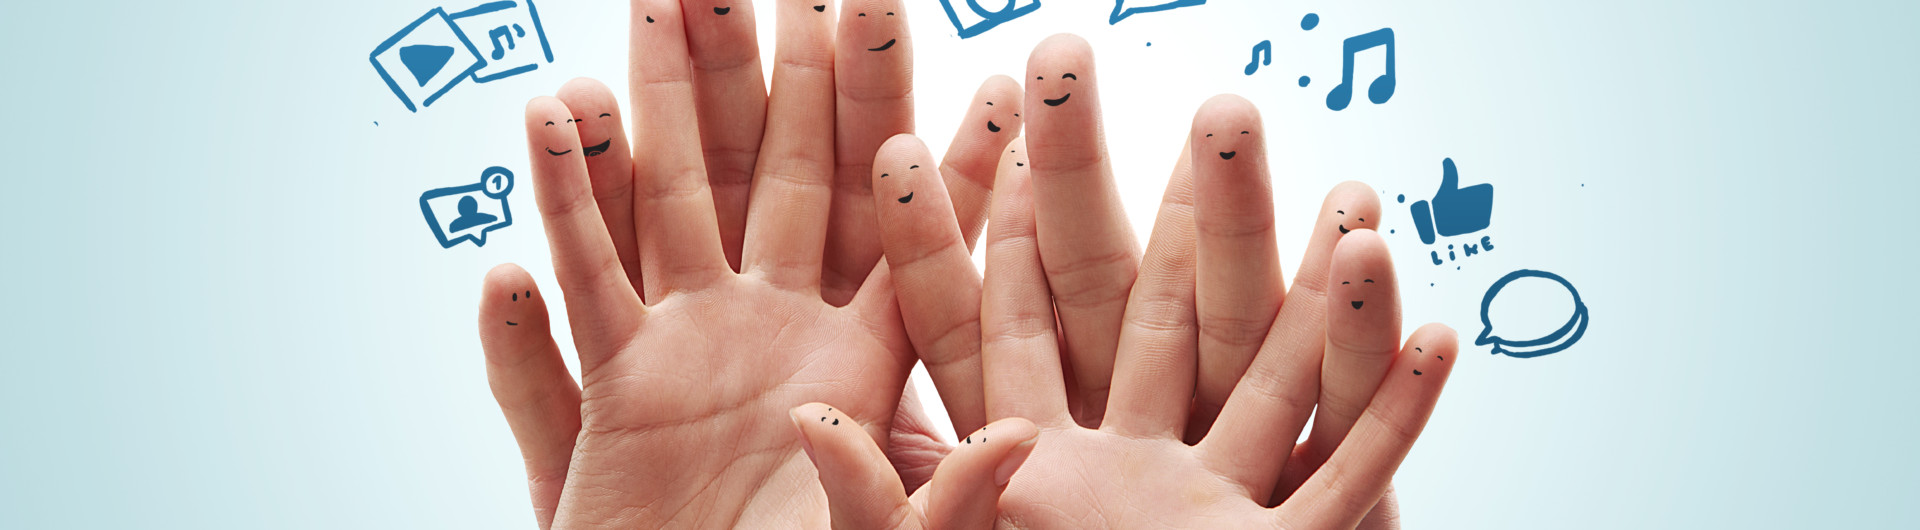 Neljä ihmisen kättä sormet limittäin ja niiden yläpuolella erilaisia merkkejä.